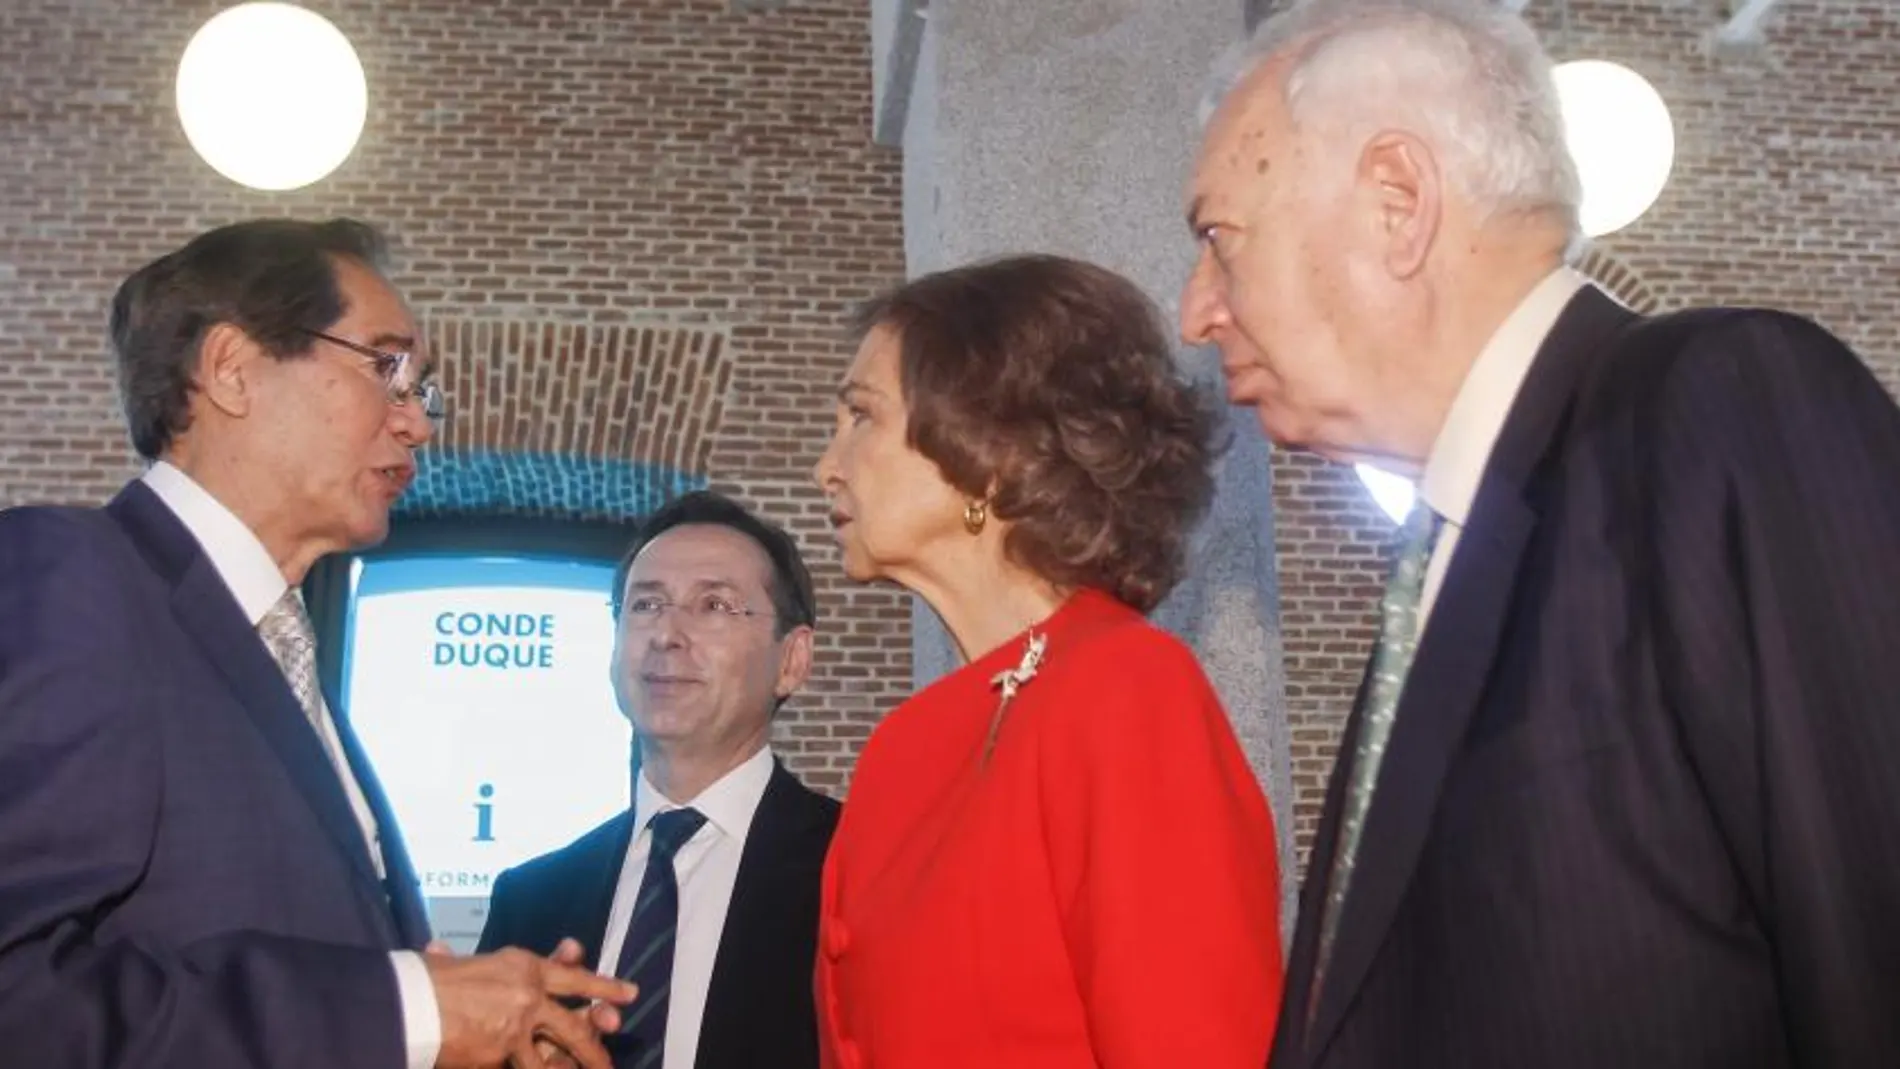 La Reina y José Manuel García-Margallo conversan con el embajador de Filipinas en España, Carlos Salinasen la inauguración de la exposición "Cooperación Es.desarrollo", sobre el 25 aniversario de la Agencia Española de Cooperación Internacional (AECID)